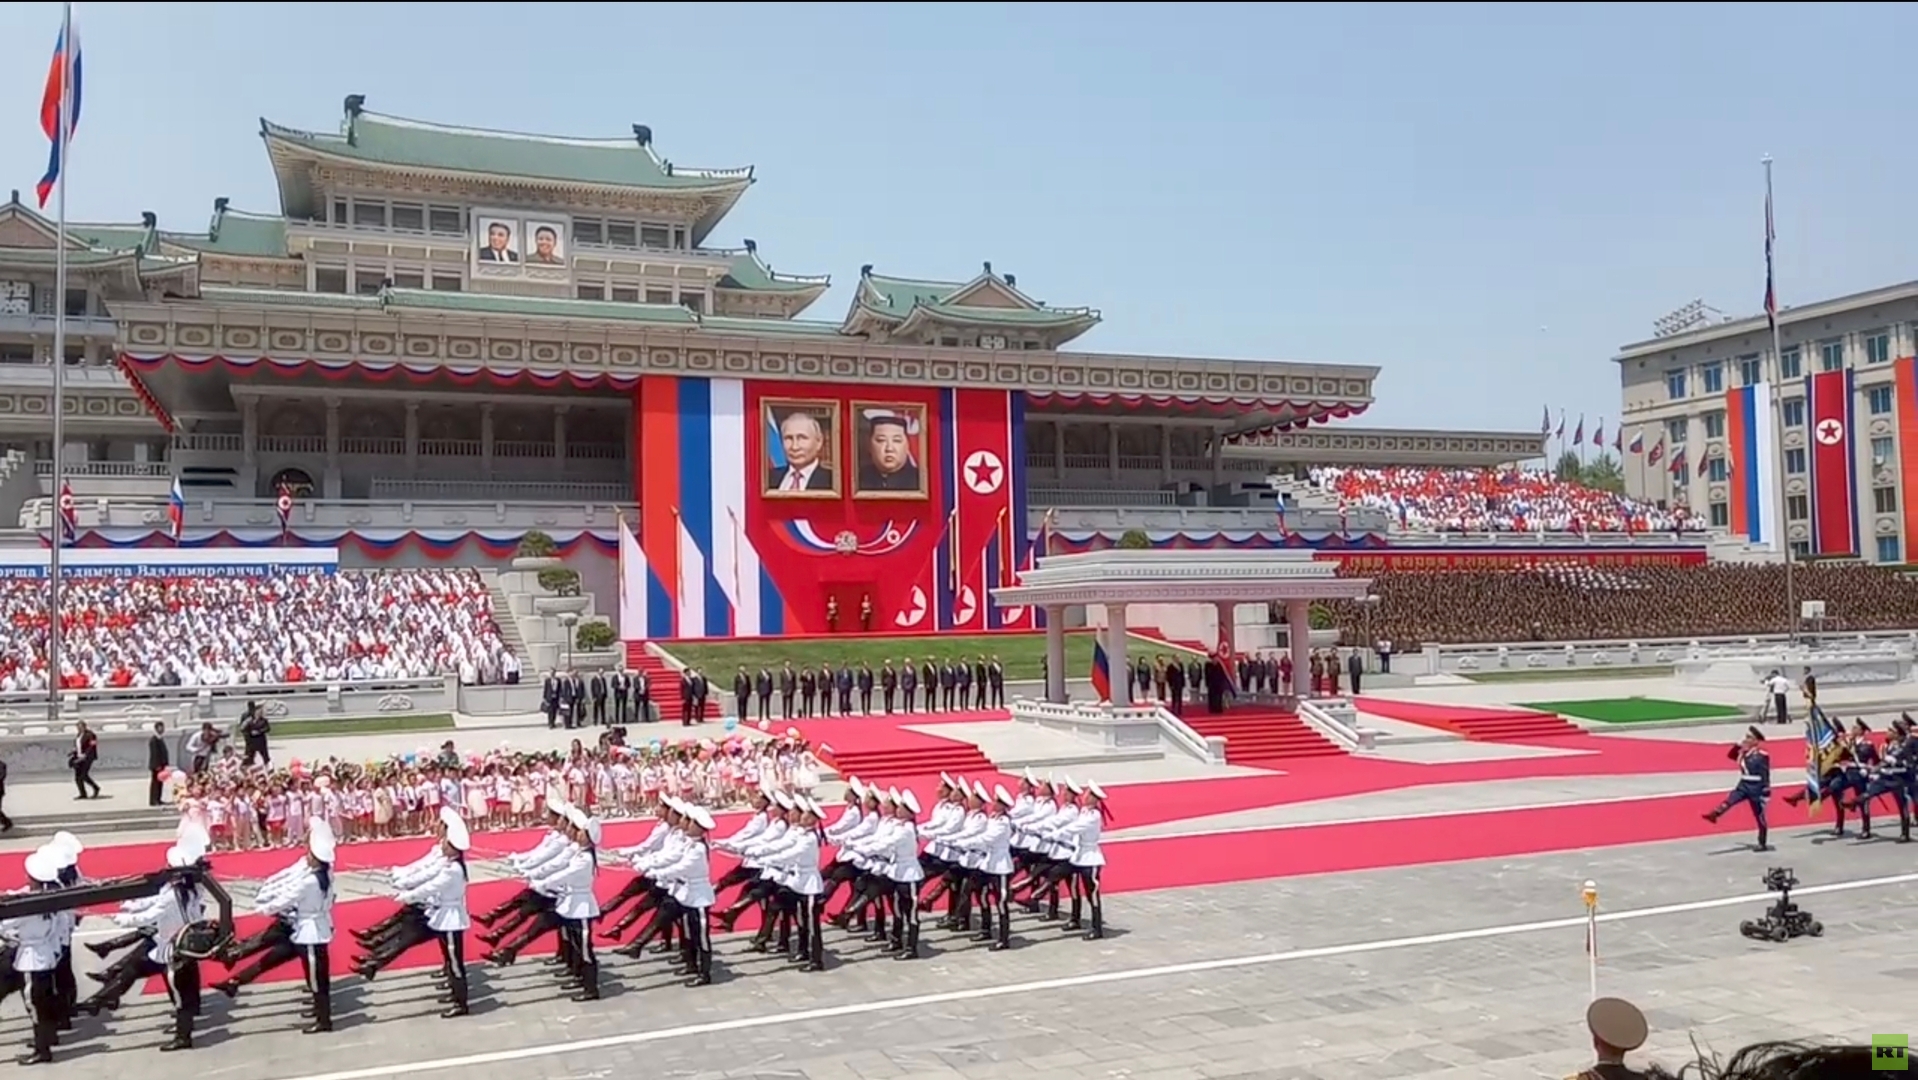 بوتين يشكر كوريا الشمالية على تنظيمها رحلات لأبناء من قضوا في العملية العسكرية الروسية